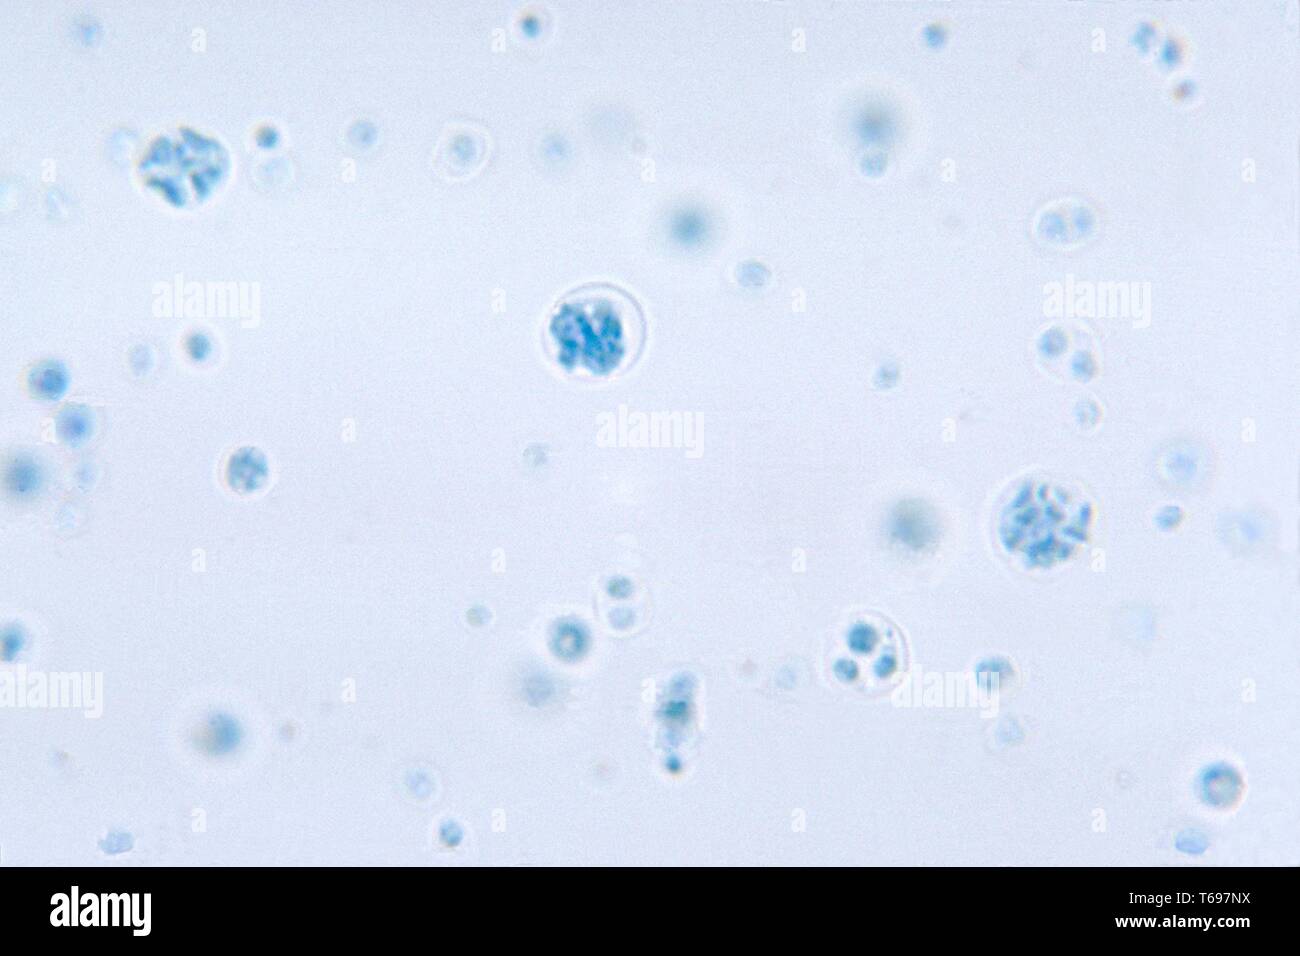 Lactophenol cotton Blue mount photomicrograph der allgegenwärtigen grünen Algen Prototheca wickerhamii, 1972. Bild mit freundlicher Genehmigung Zentren für Krankheitskontrolle und Prävention (CDC)/Dr William Kaplan, Herr Sudman. () Stockfoto